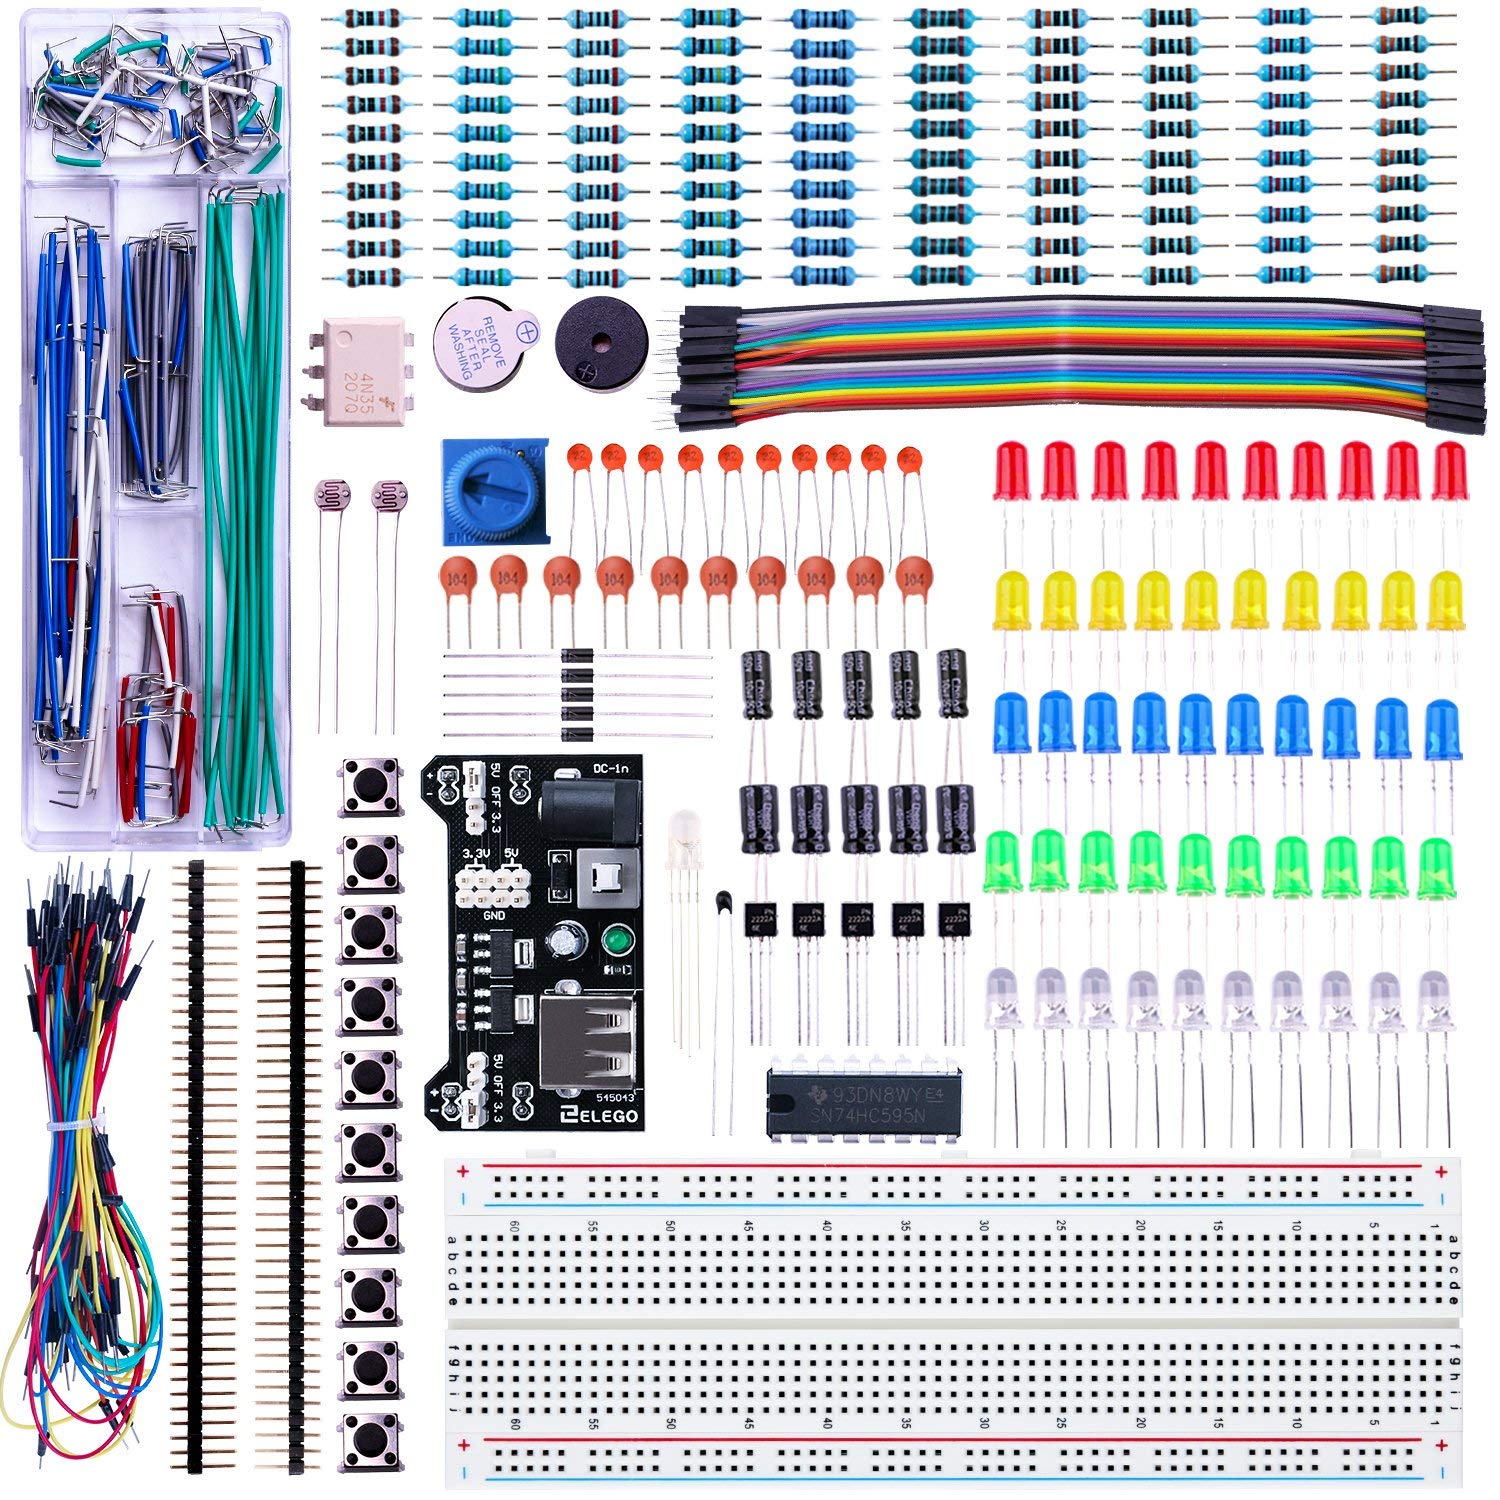 ELEGOO Kit Électronique Mis à Jour avec Module d'alimentation, Câbles Jumpers, Potentiomètre de précision, Plaque de Test 830 Points pour Arduino UNO R3 Mega 2560 Nano Raspberry Pi et STM32